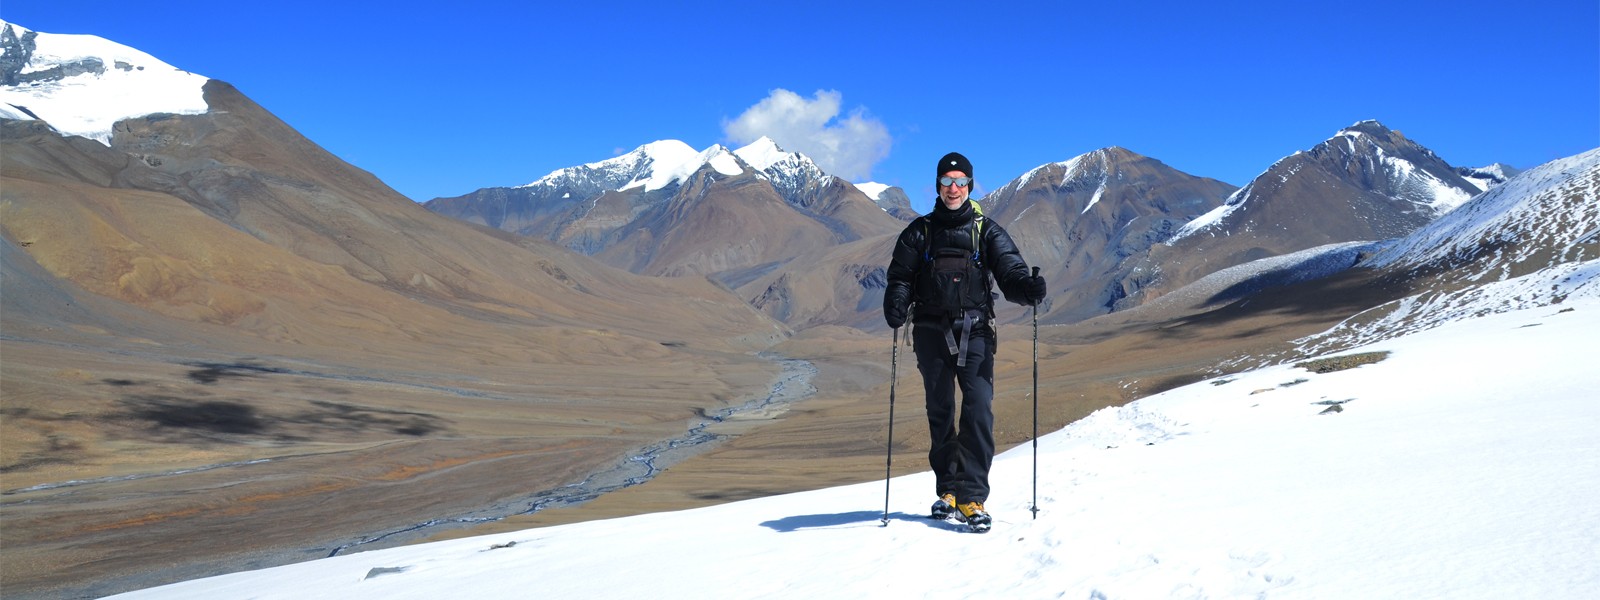 Dhaulagiri French Pass and Annapurna Trekking